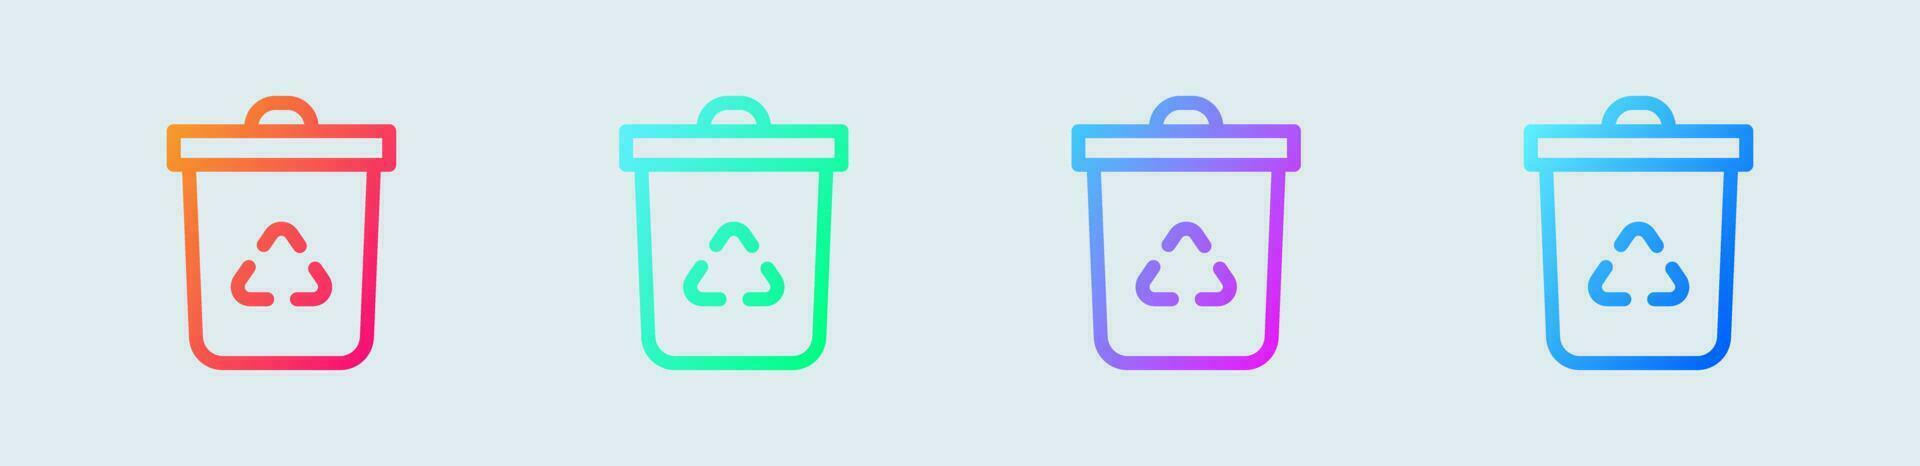 recyclage ligne icône dans pente couleurs. écologie panneaux vecteur illustration.